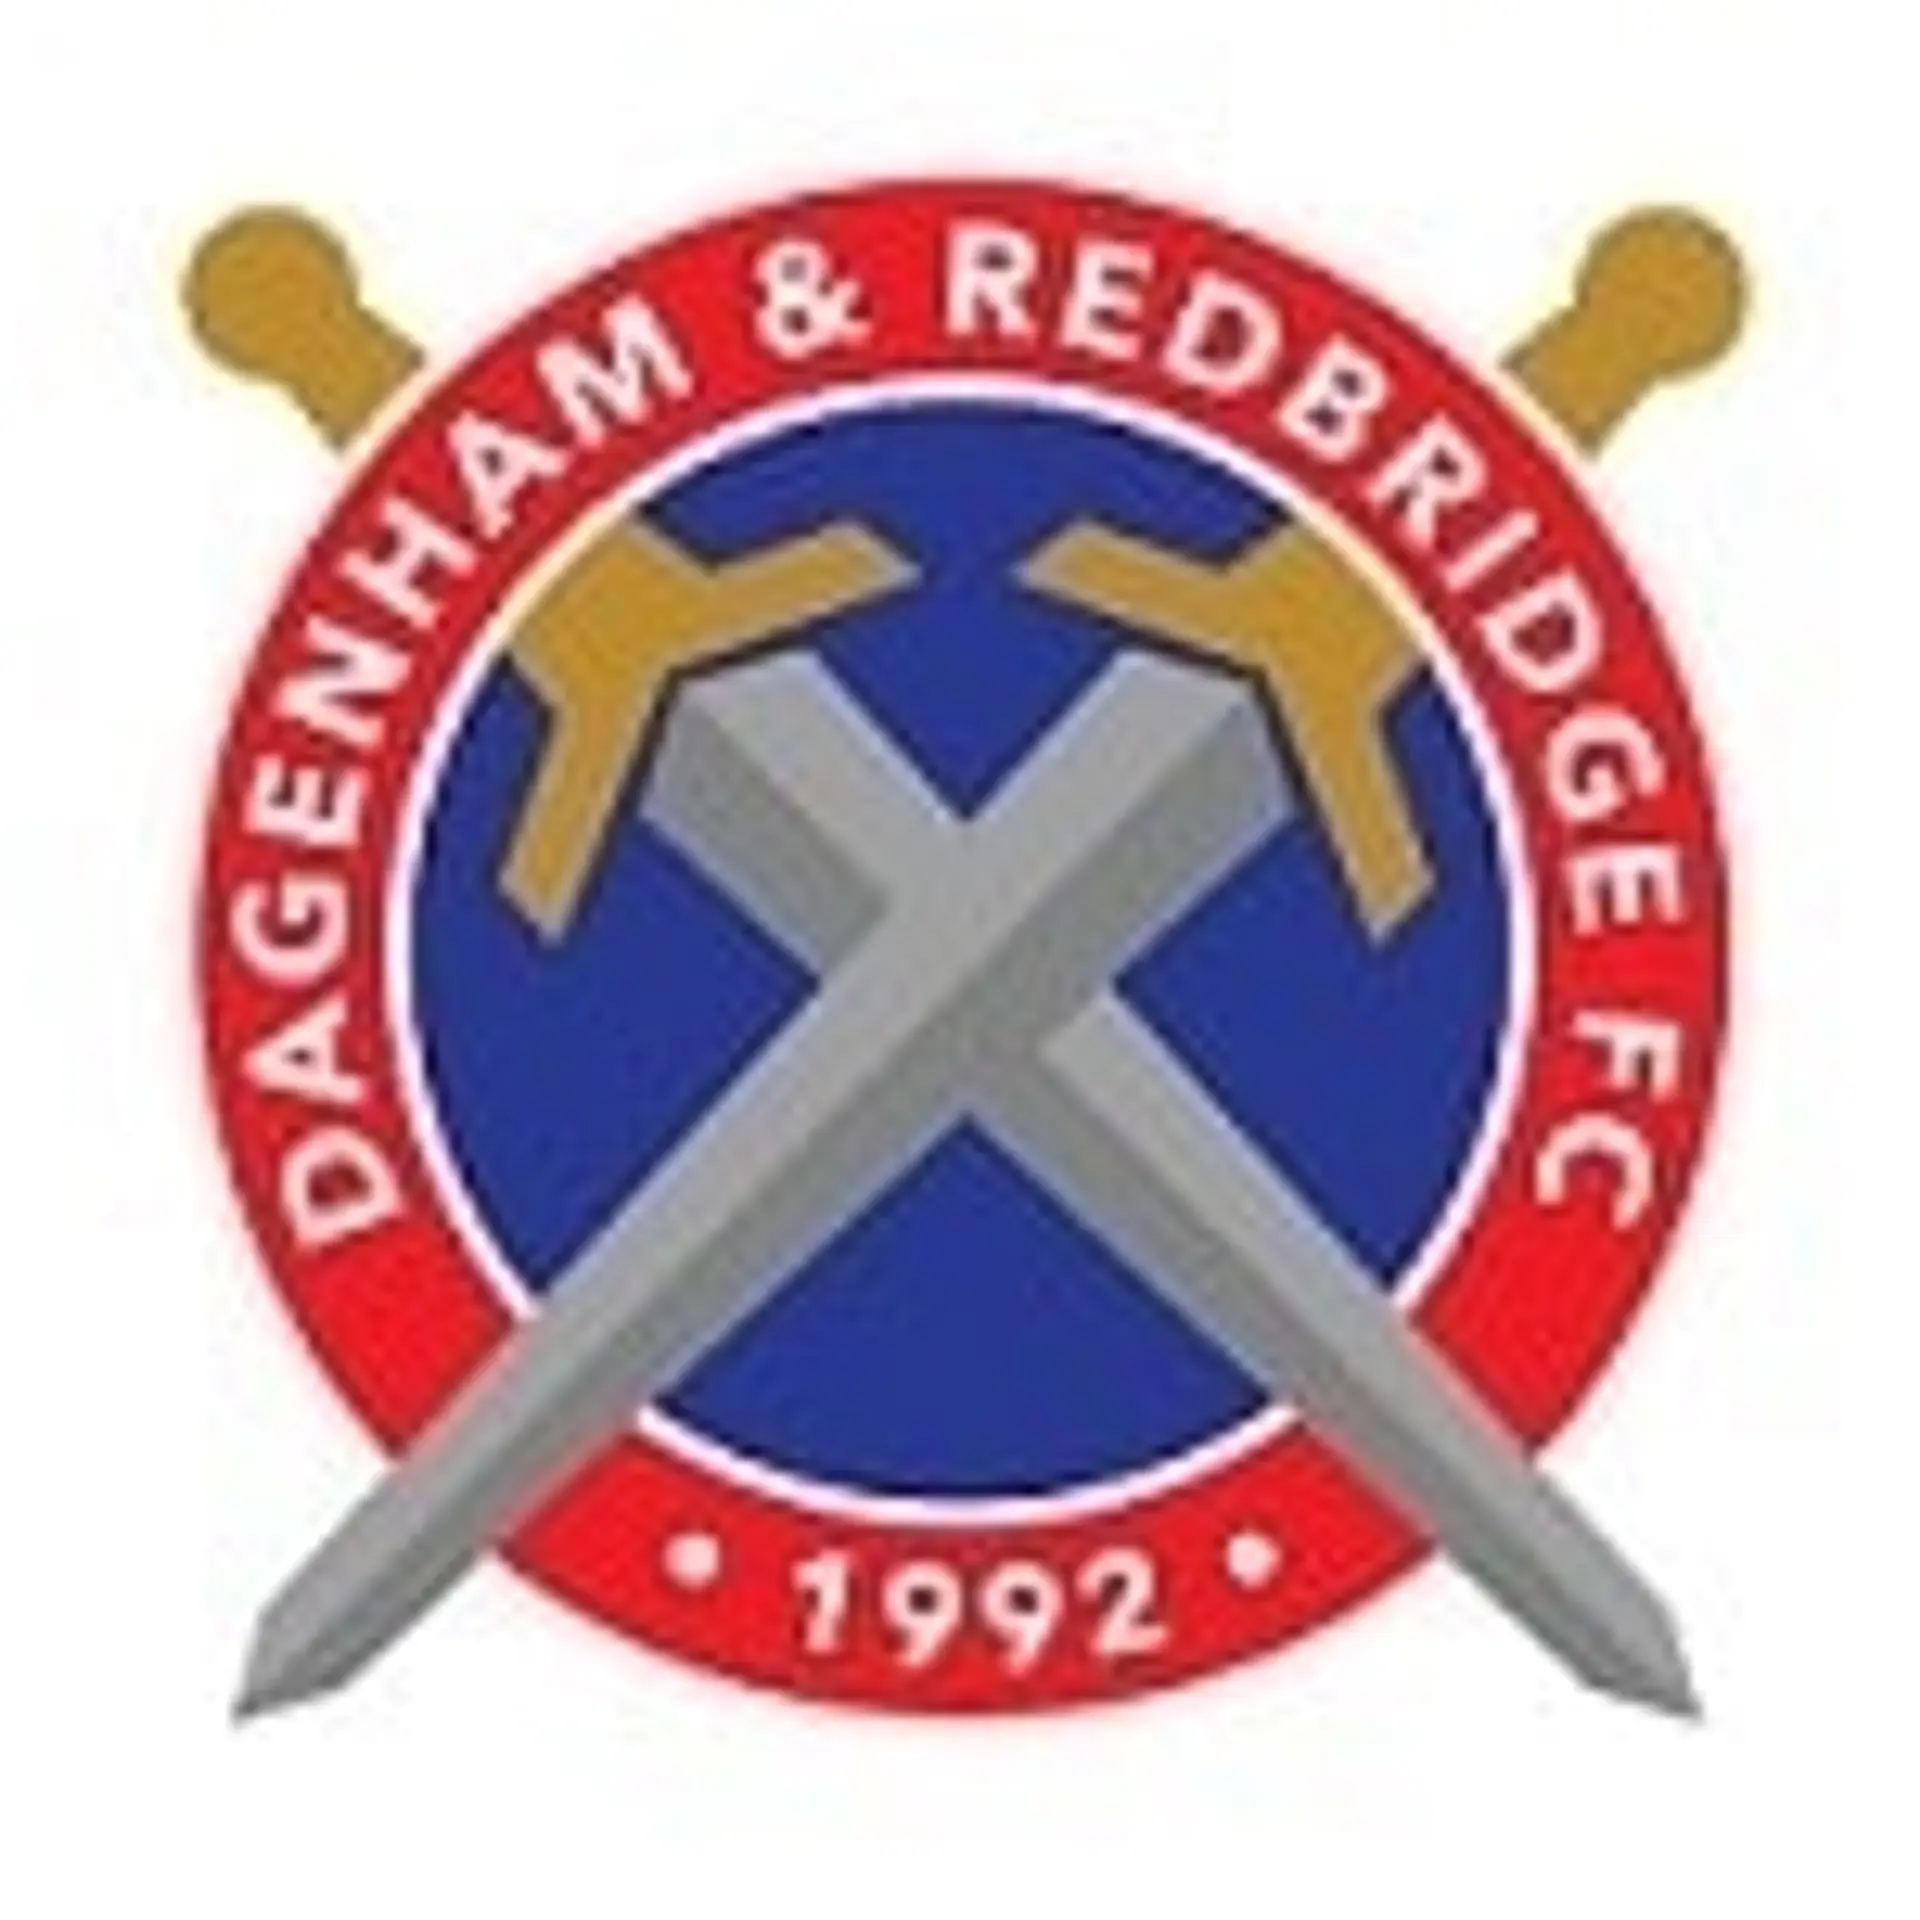 Dagenham & Redbridge Blog de fans 